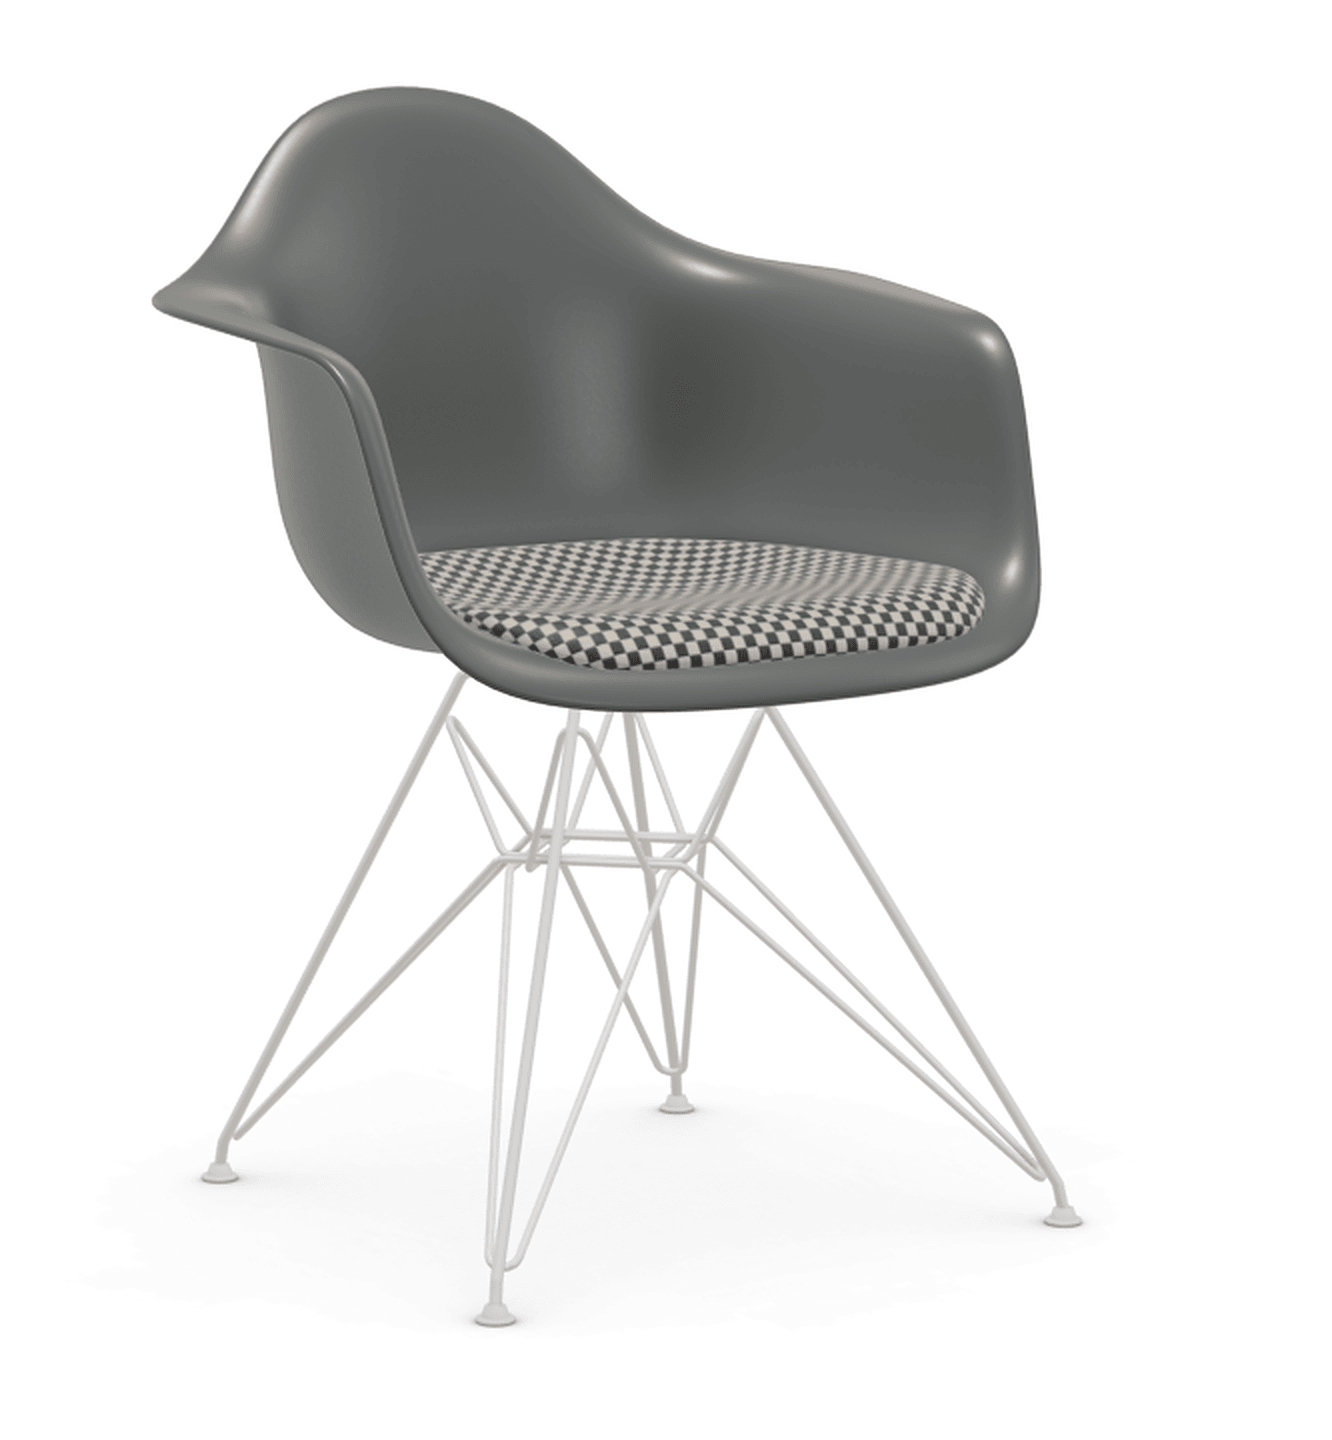 Vitra DAR Eames Plastic Armchair - 56 granitgrau - Sitzpolster "Checker" 01 black/white - Untergestell 04 weiss pulverbeschichtet (glatt)--106